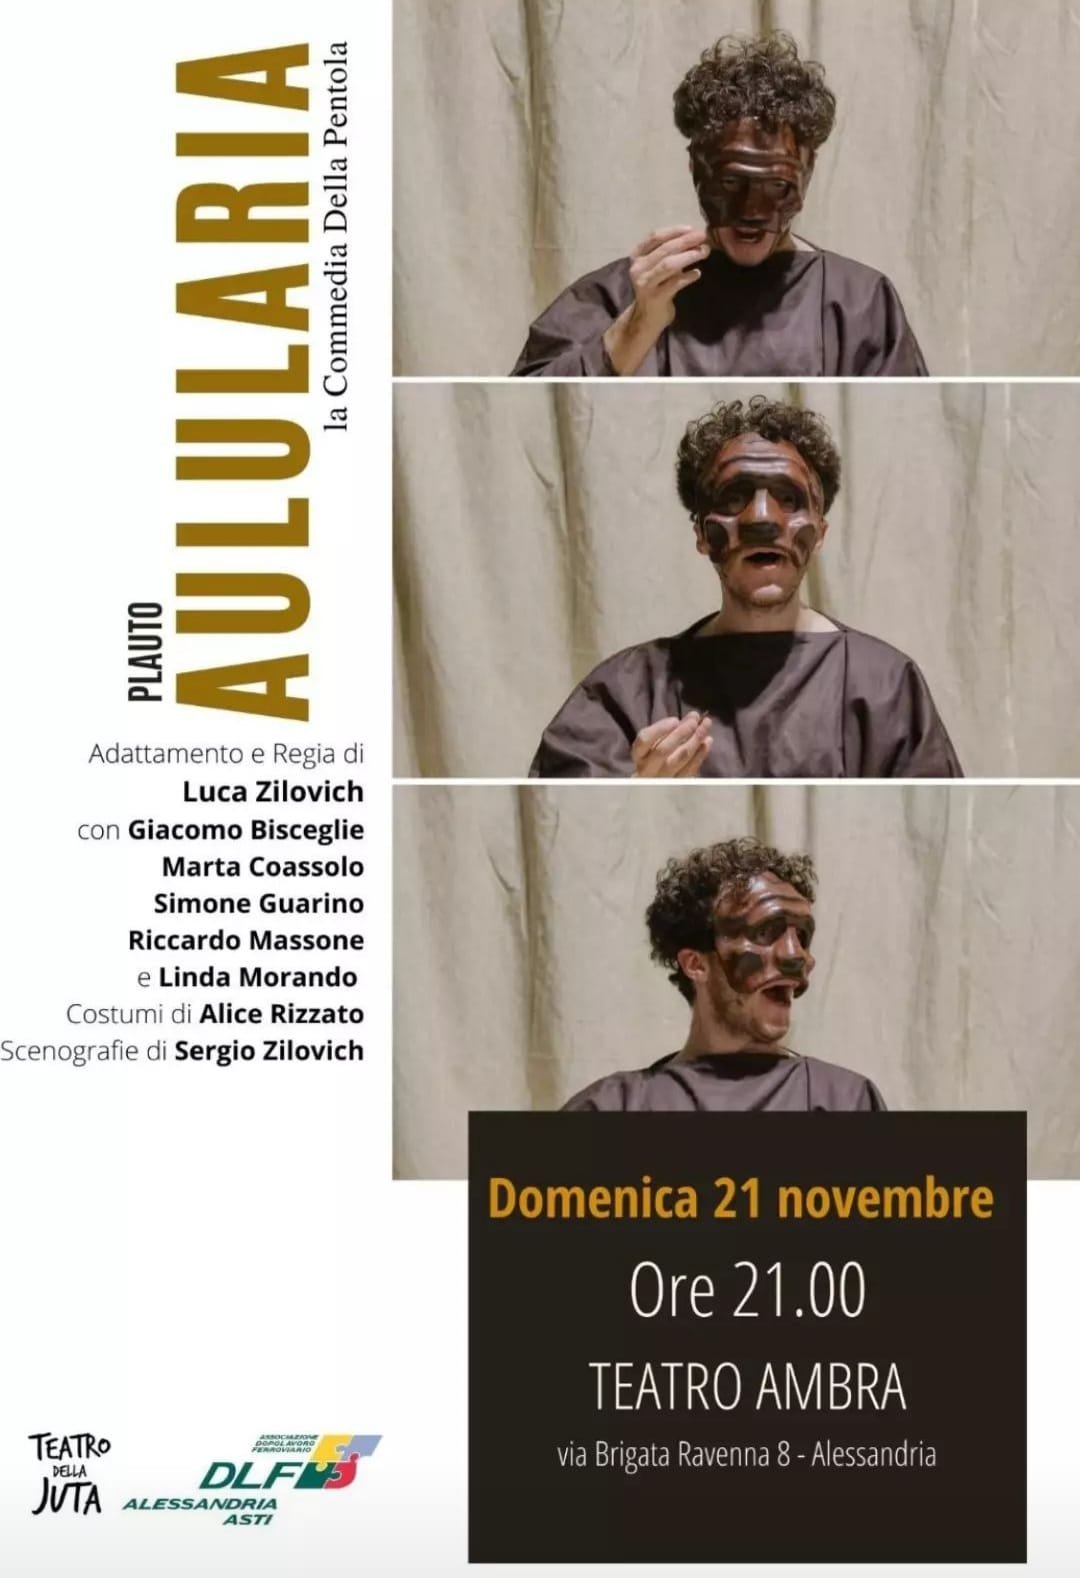 Il 21 novembre lo spettacolo “Aulularia” al Teatro Ambra di Alessandria